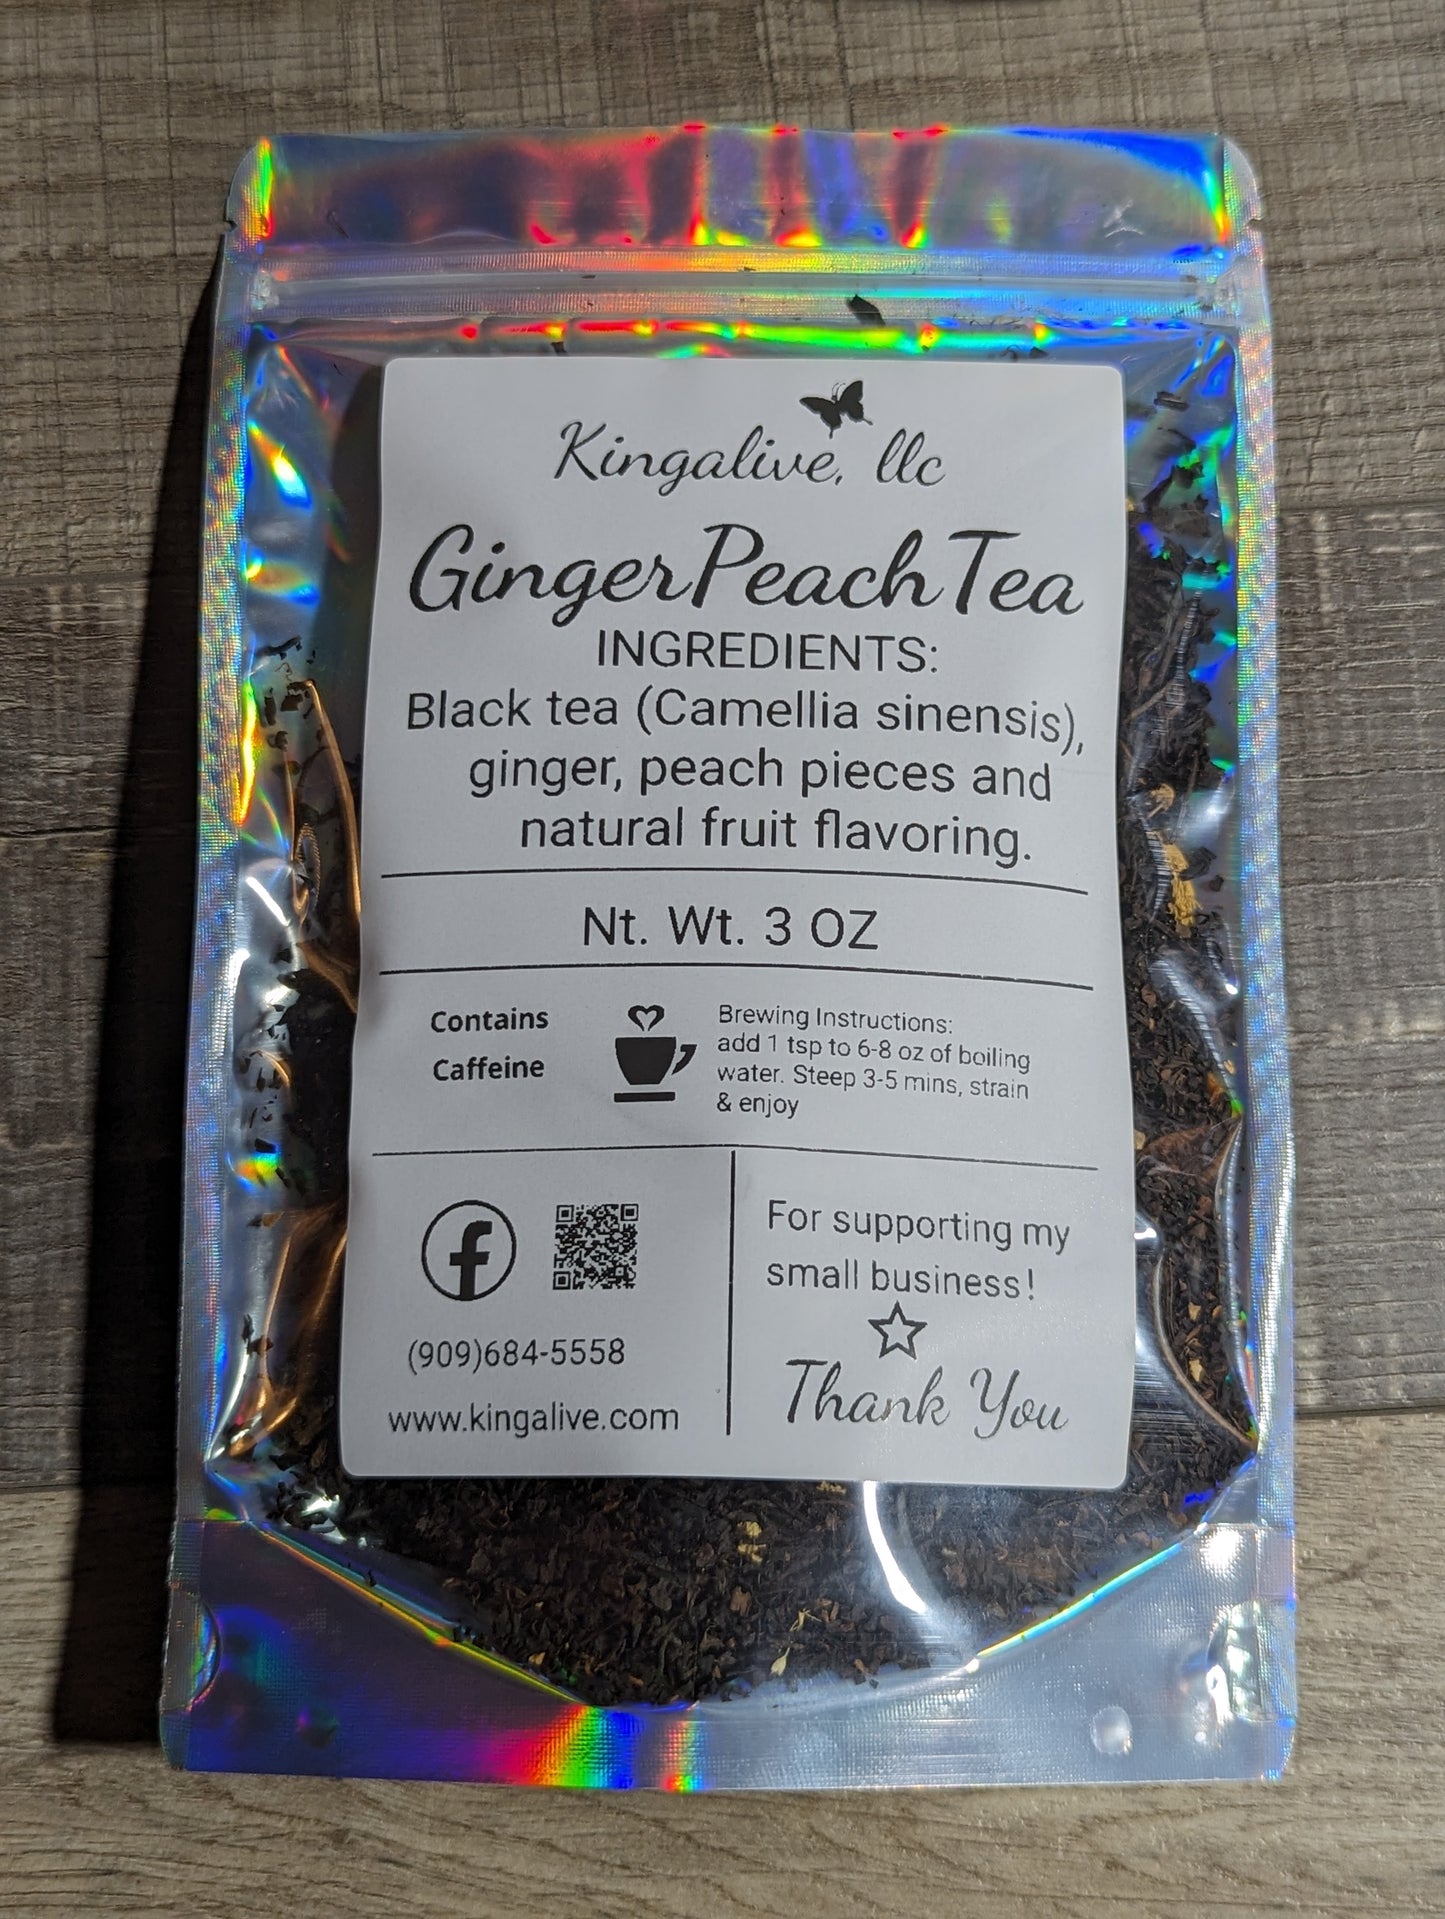 Ginger Peach Tea